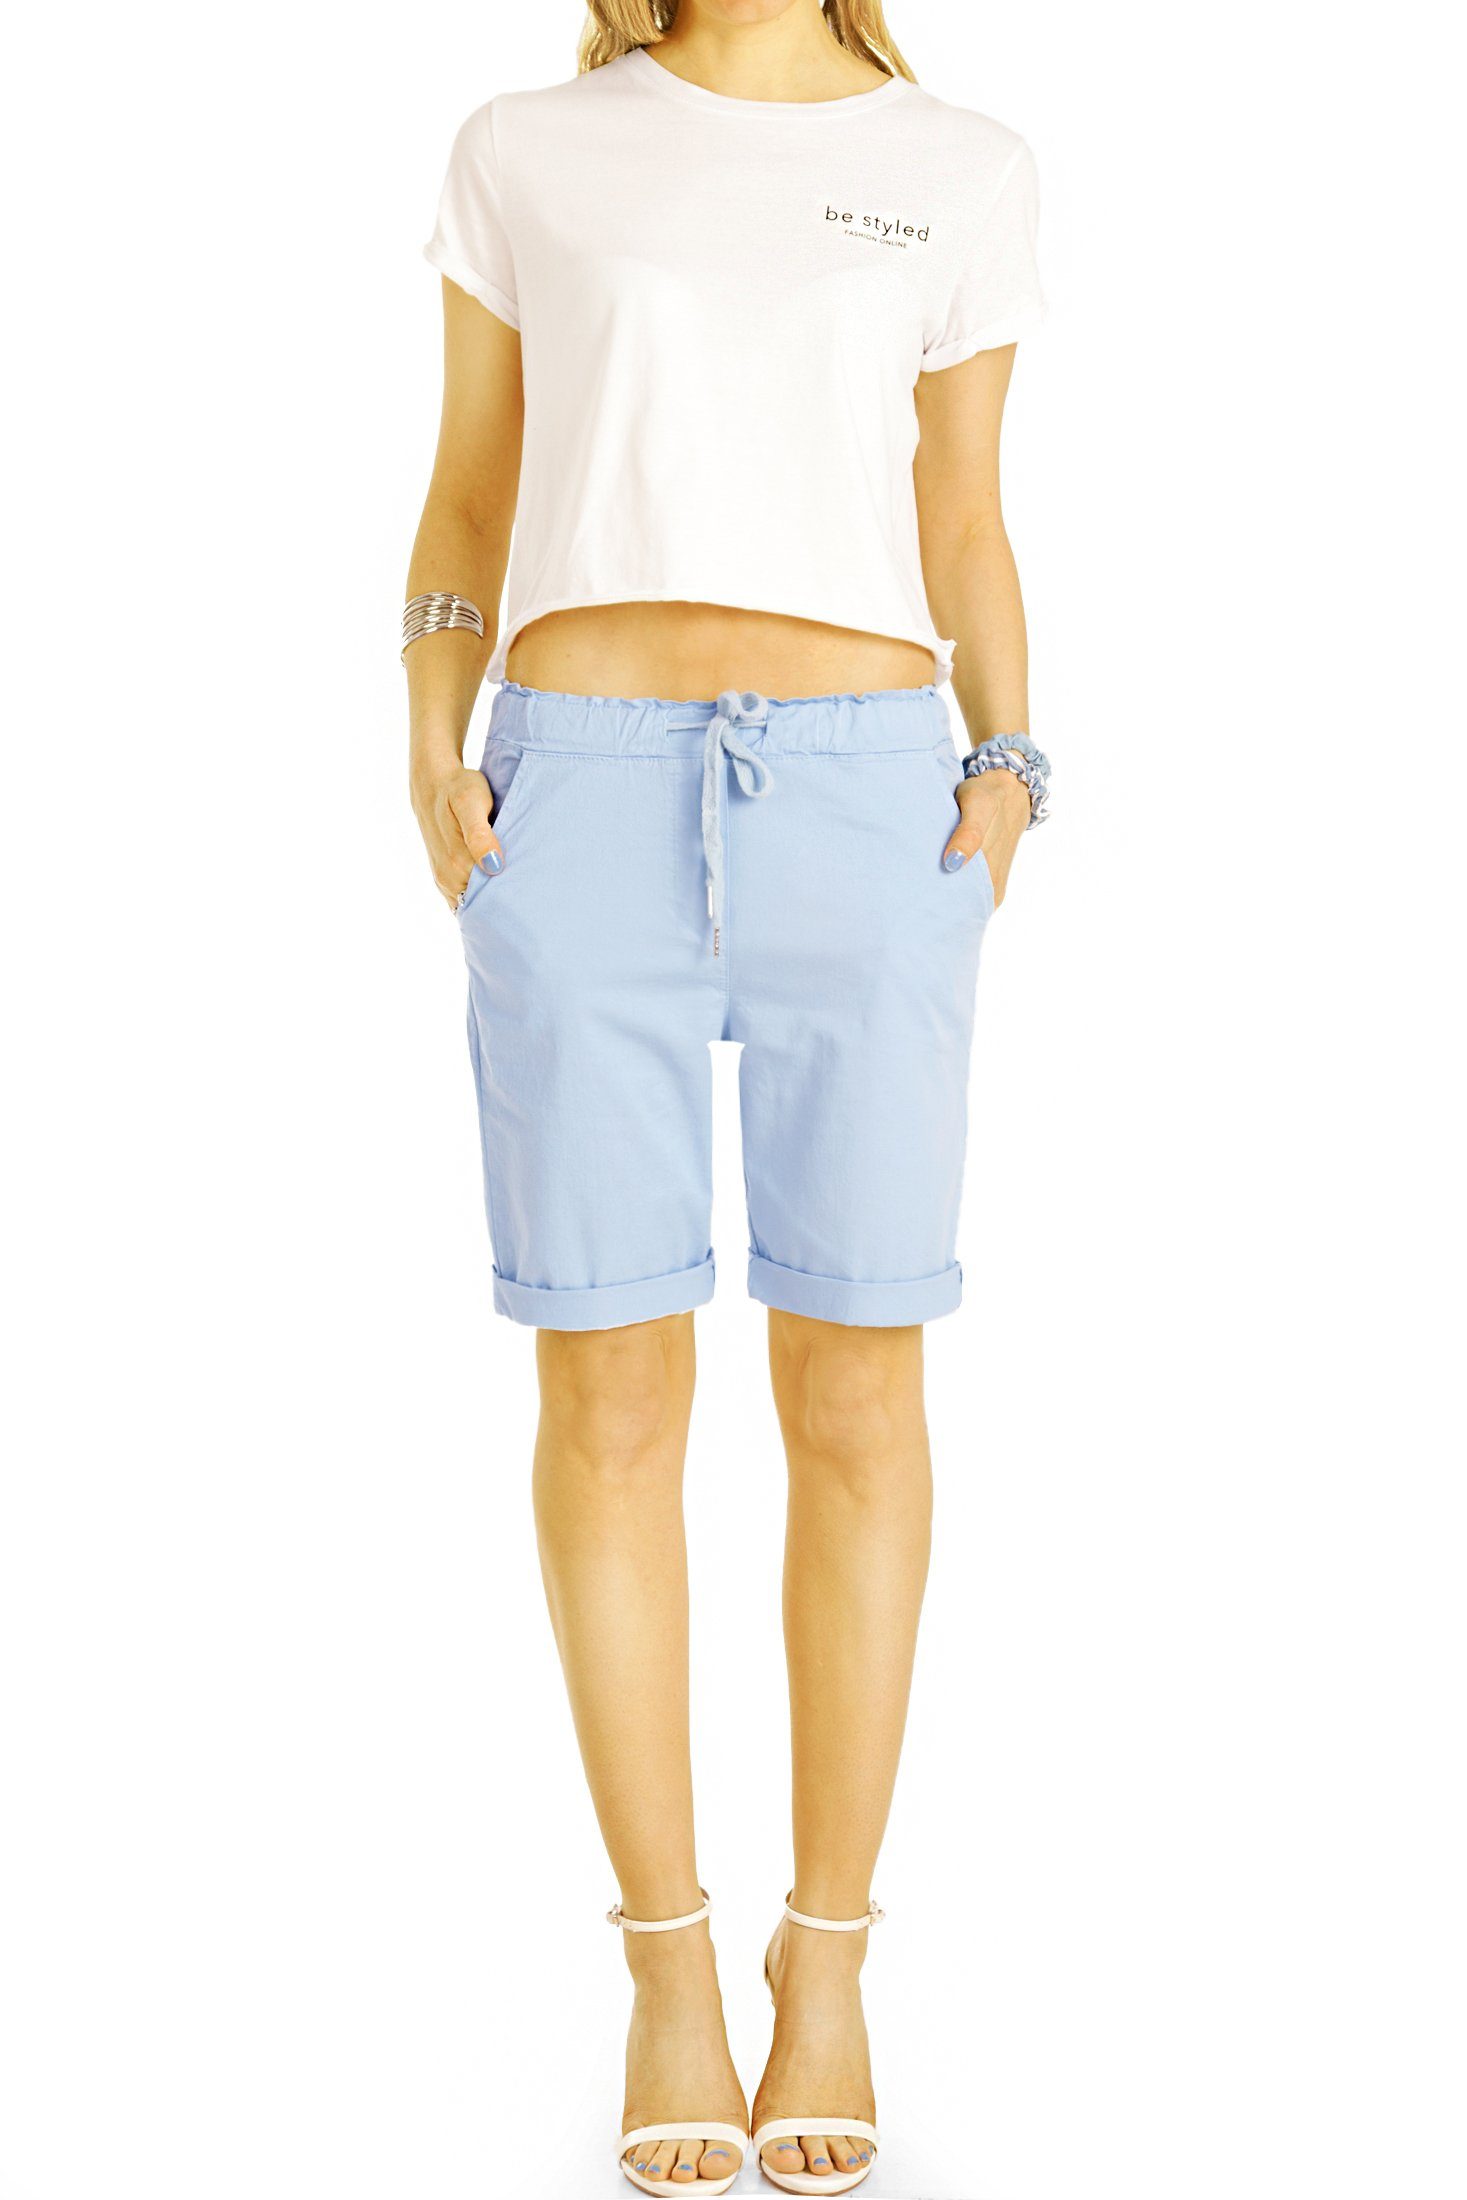 be styled Shorts Chino Stoff Shorts - Kurze lockere Hosen mit Kordelzug - Damen - h28a mit Kordelzug, in Unifarben, mit elastischem Bund hellblau